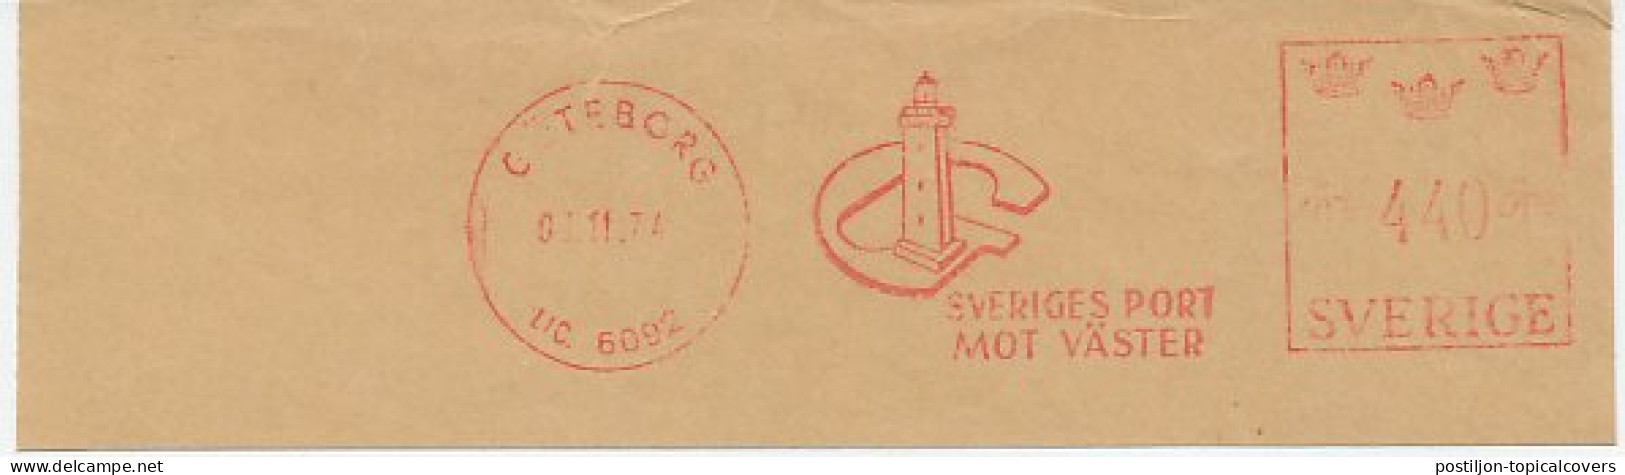 Meter Cut Sweden 1974 Lighthouse - Goteborg - Vuurtorens